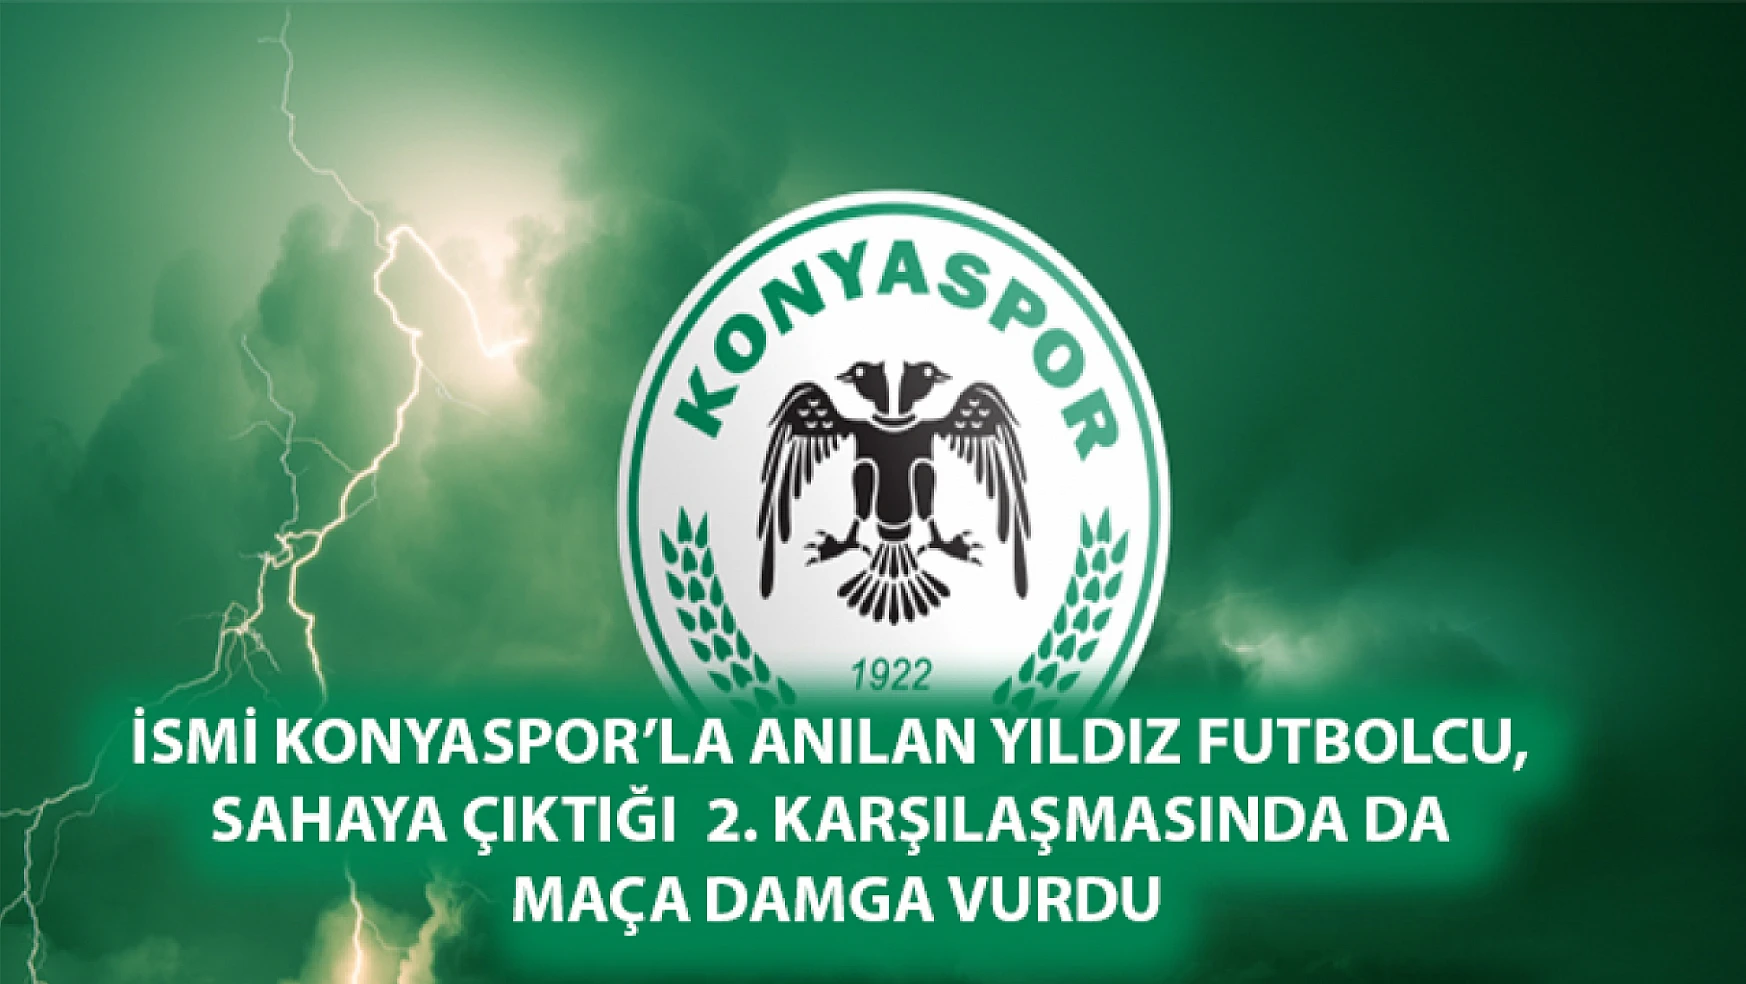 İsmi Konyaspor'la anılan yıldız futbolcu, sahaya çıktığı  2. Karşılaşmasında da maça damga vurdu